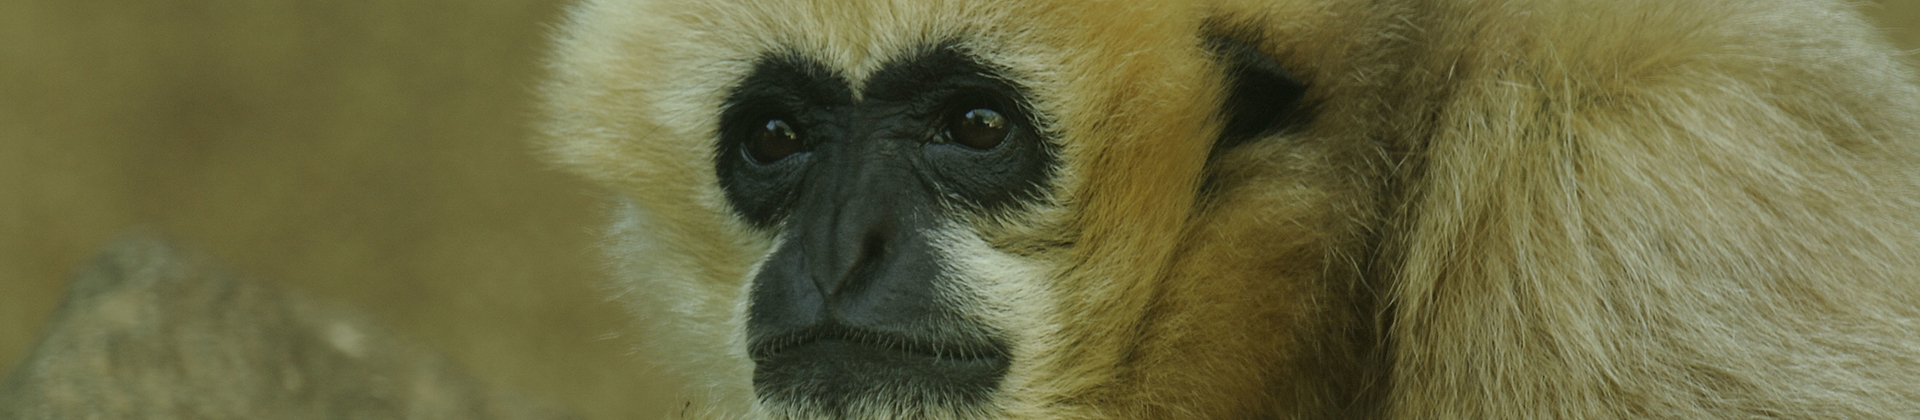 Visite guidée zoologique : Primates et évolution des hommes